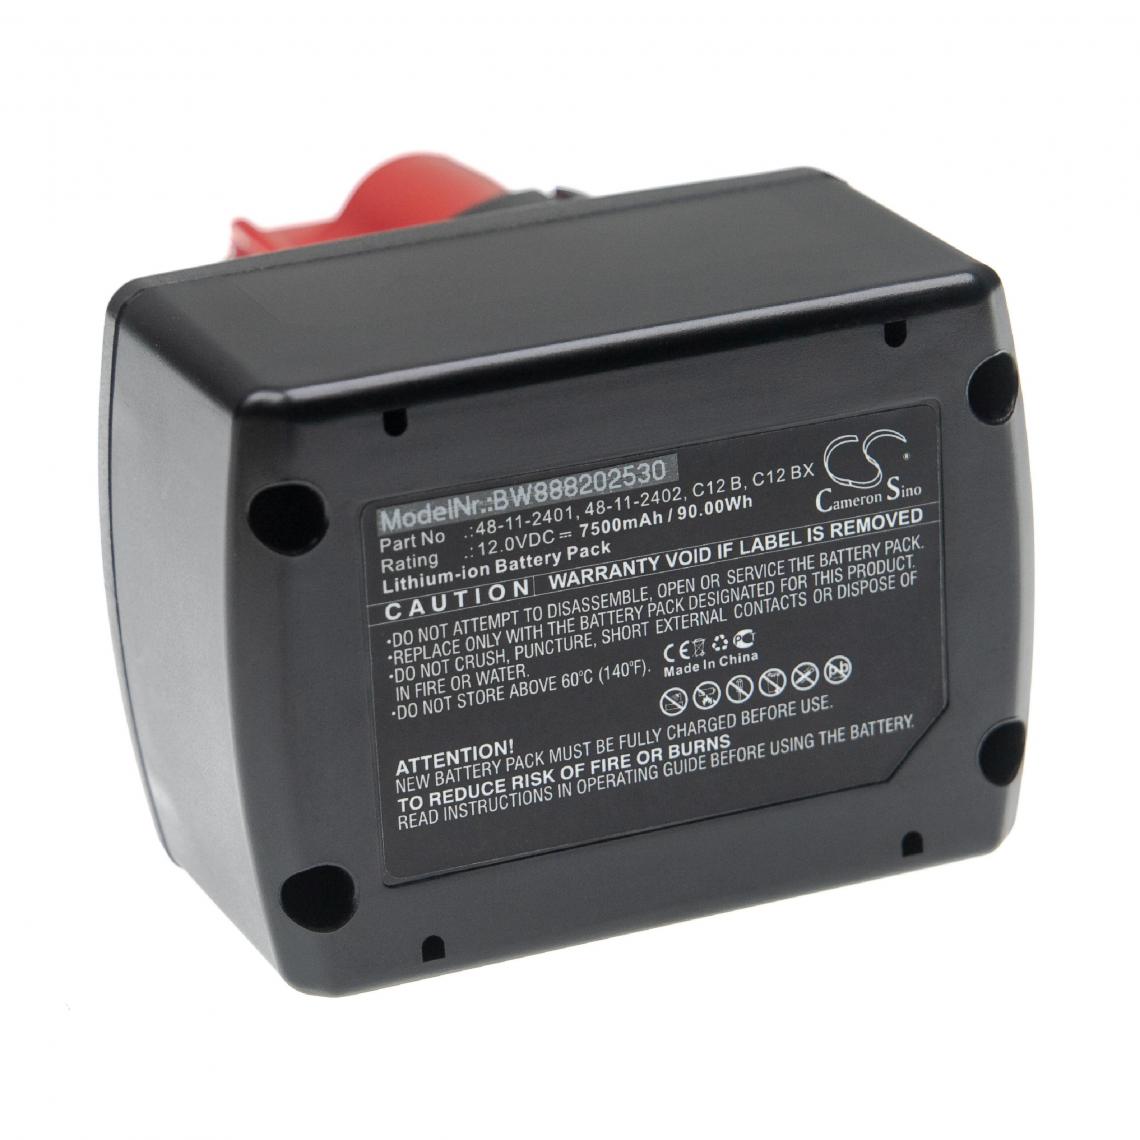 Vhbw - vhbw Batterie compatible avec Milwaukee 2471-21, 2471-22, 2590-20, 3/8, 49-24-0145, 49-24-0146 outil électrique (7500mAh Li-ion 12 V) - Clouterie